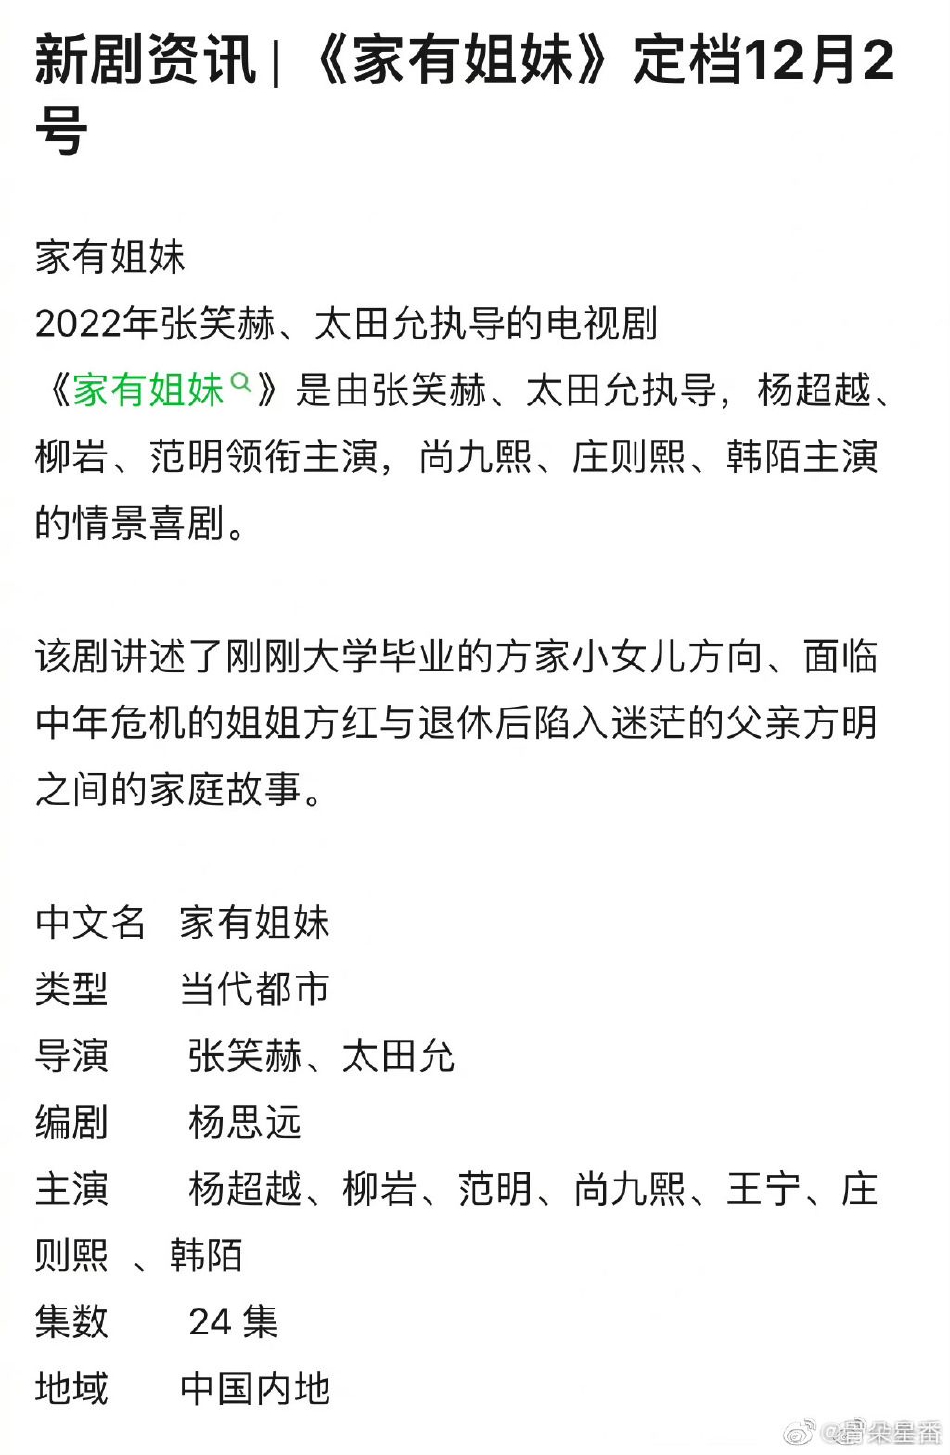 杨超越、柳岩、范明主演《家有姐妹》定档12月2号播出